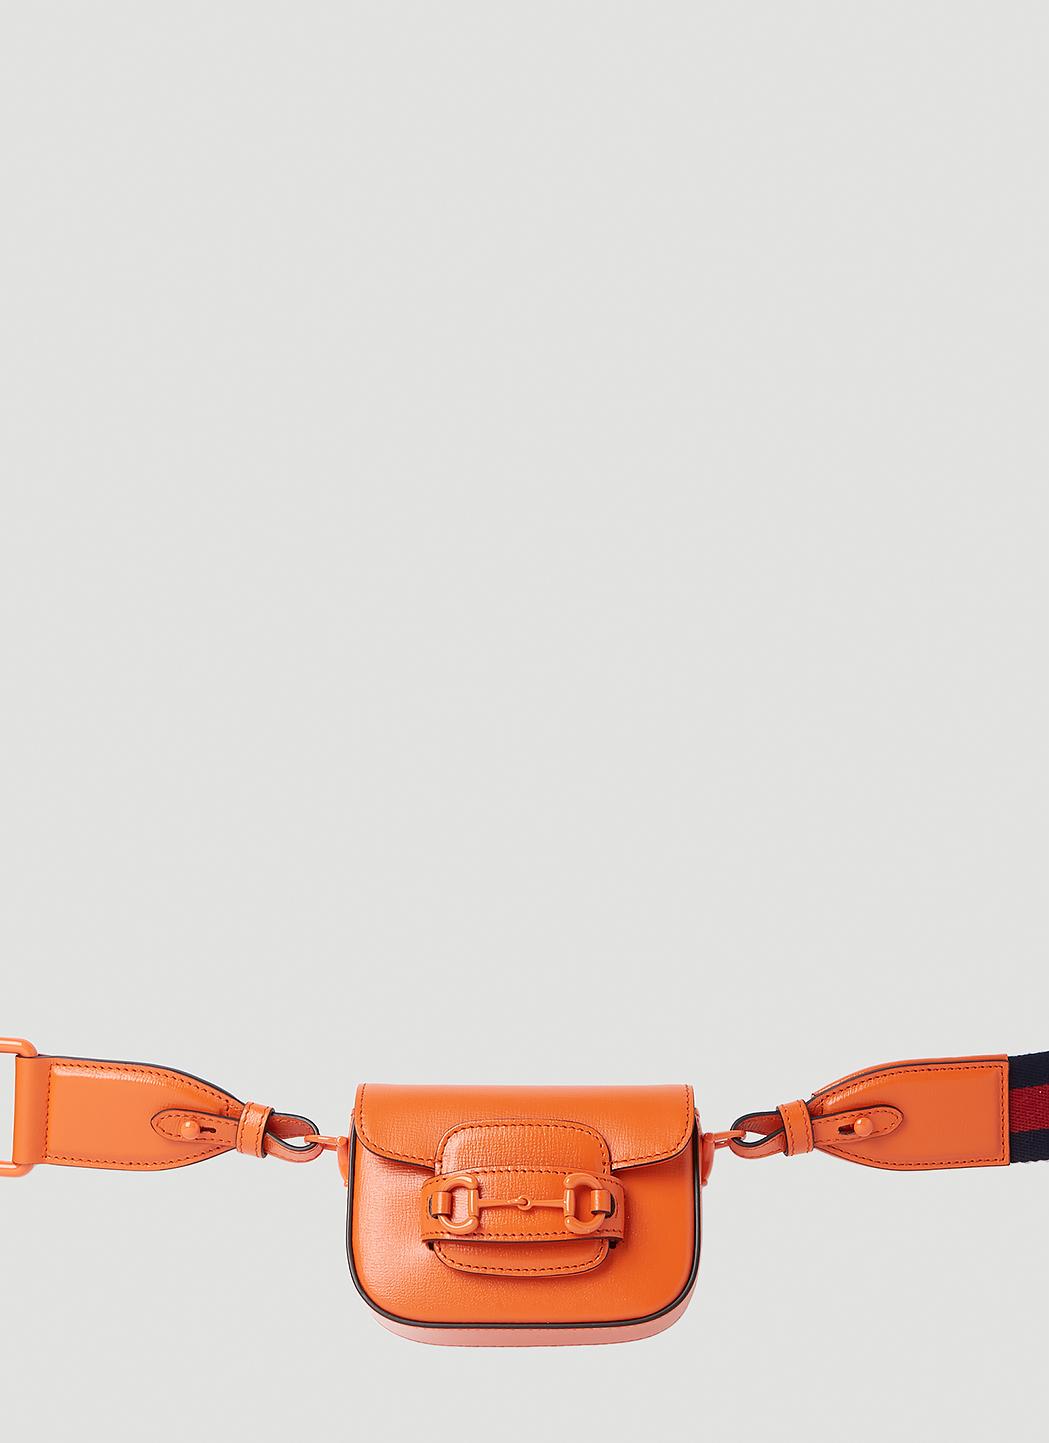 Gucci 1955 Horsebit Mini Belt Bag in Red